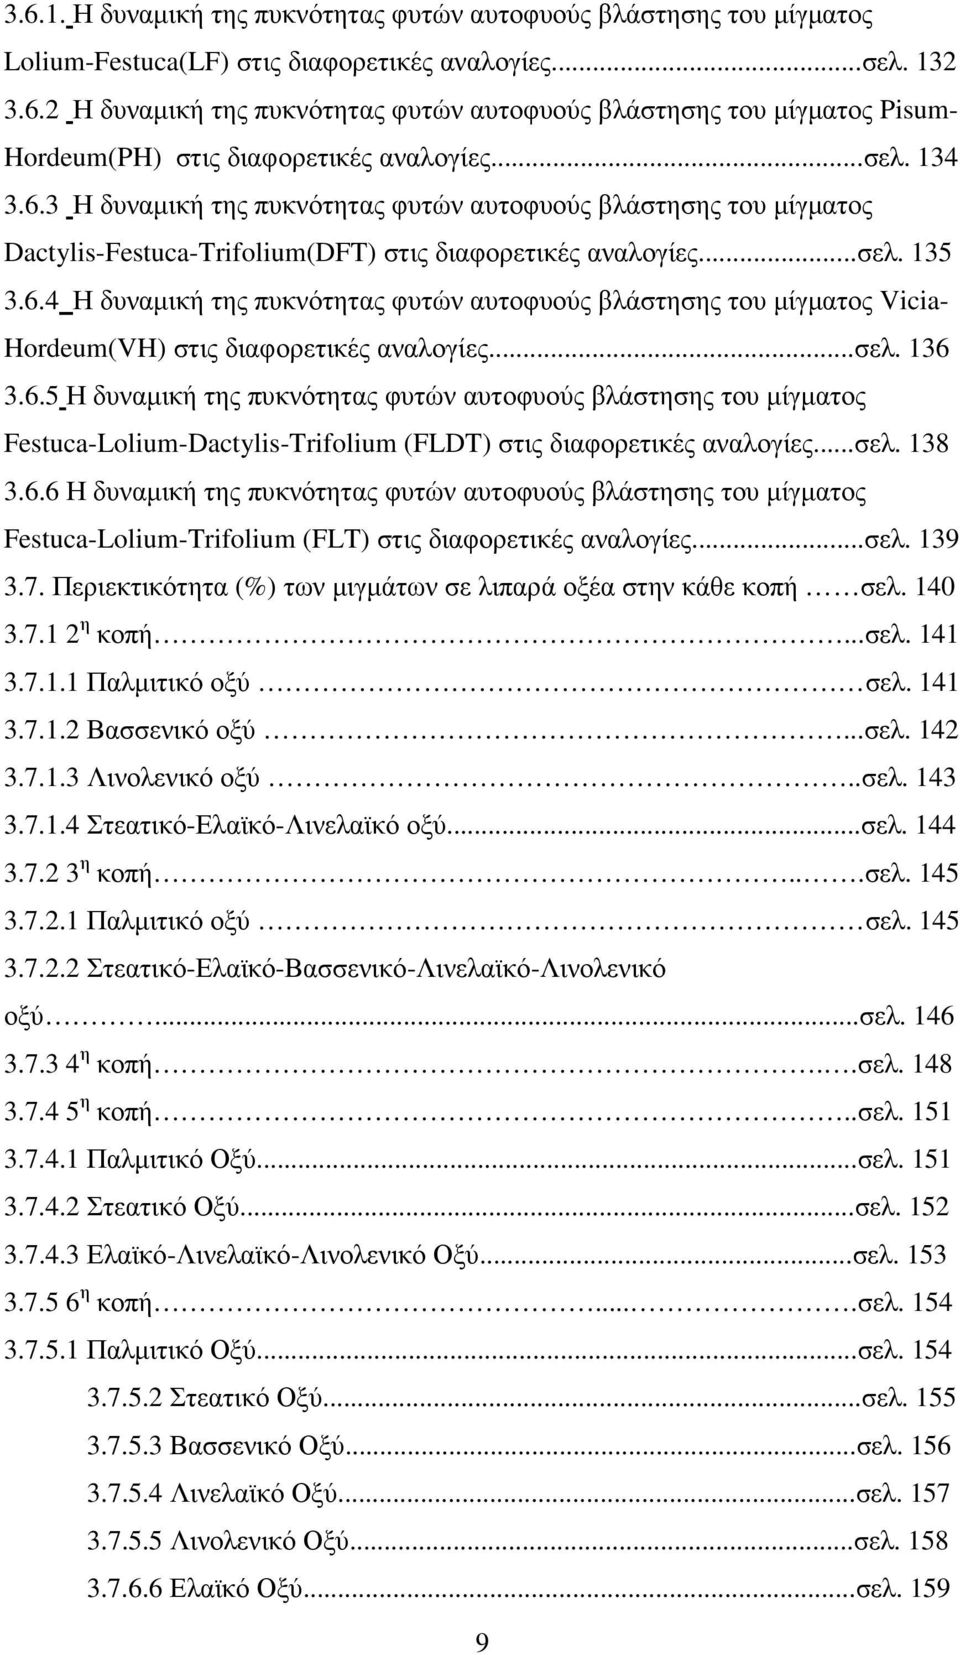 ..σελ. 136 3.6.5 Η δυναµική της πυκνότητας φυτών αυτοφυούς βλάστησης του µίγµατος Festuca-Lolium-Dactylis-Trifolium (FLDT) στις διαφορετικές αναλογίες...σελ. 138 3.6.6 Η δυναµική της πυκνότητας φυτών αυτοφυούς βλάστησης του µίγµατος Festuca-Lolium-Trifolium (FLT) στις διαφορετικές αναλογίες.